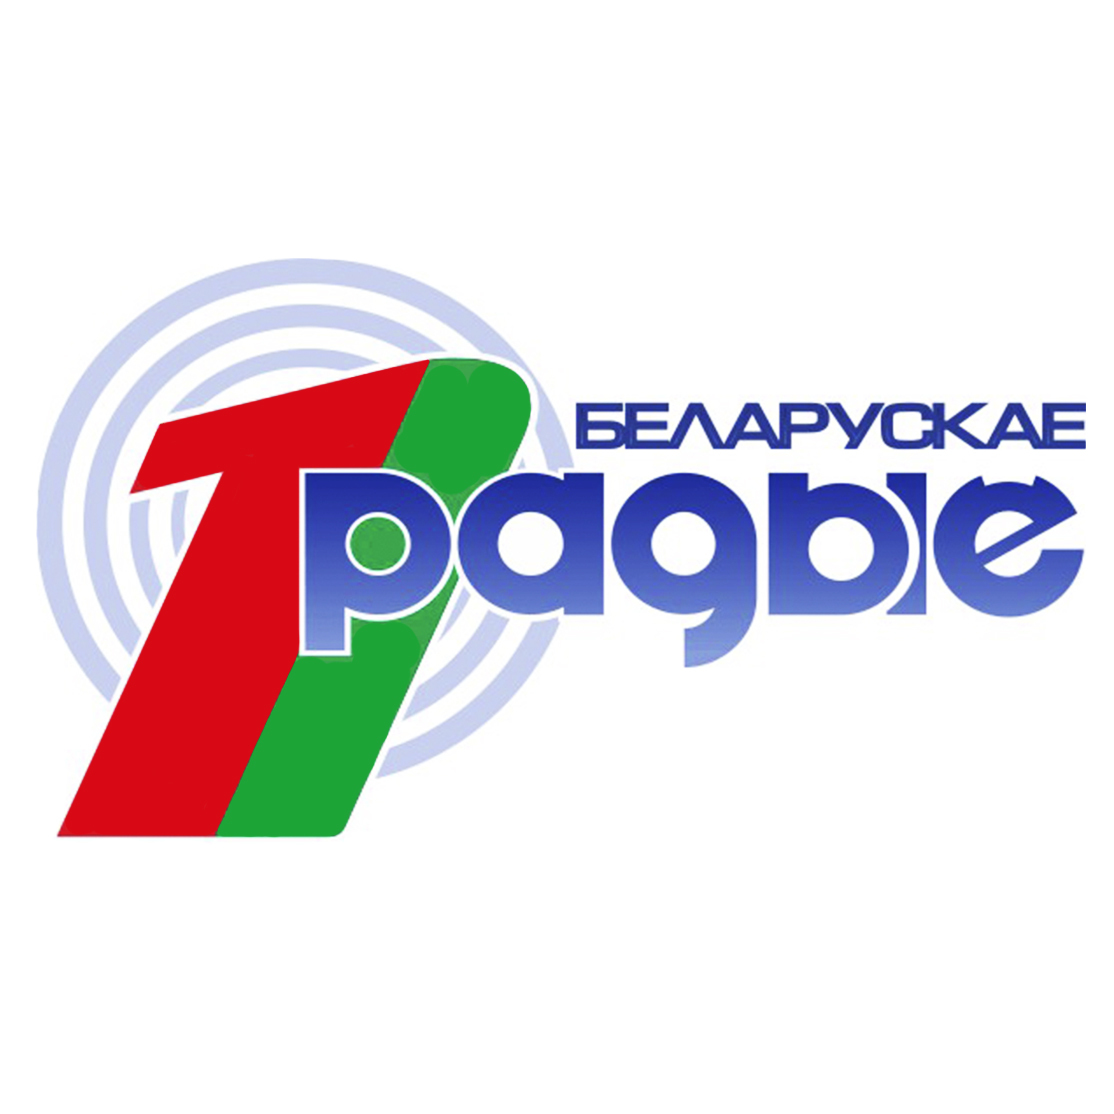 1 национальный про. Первый национальный канал. Радио Беларусь. Беларусь (радиостанция). Первый национальный Беларусь.